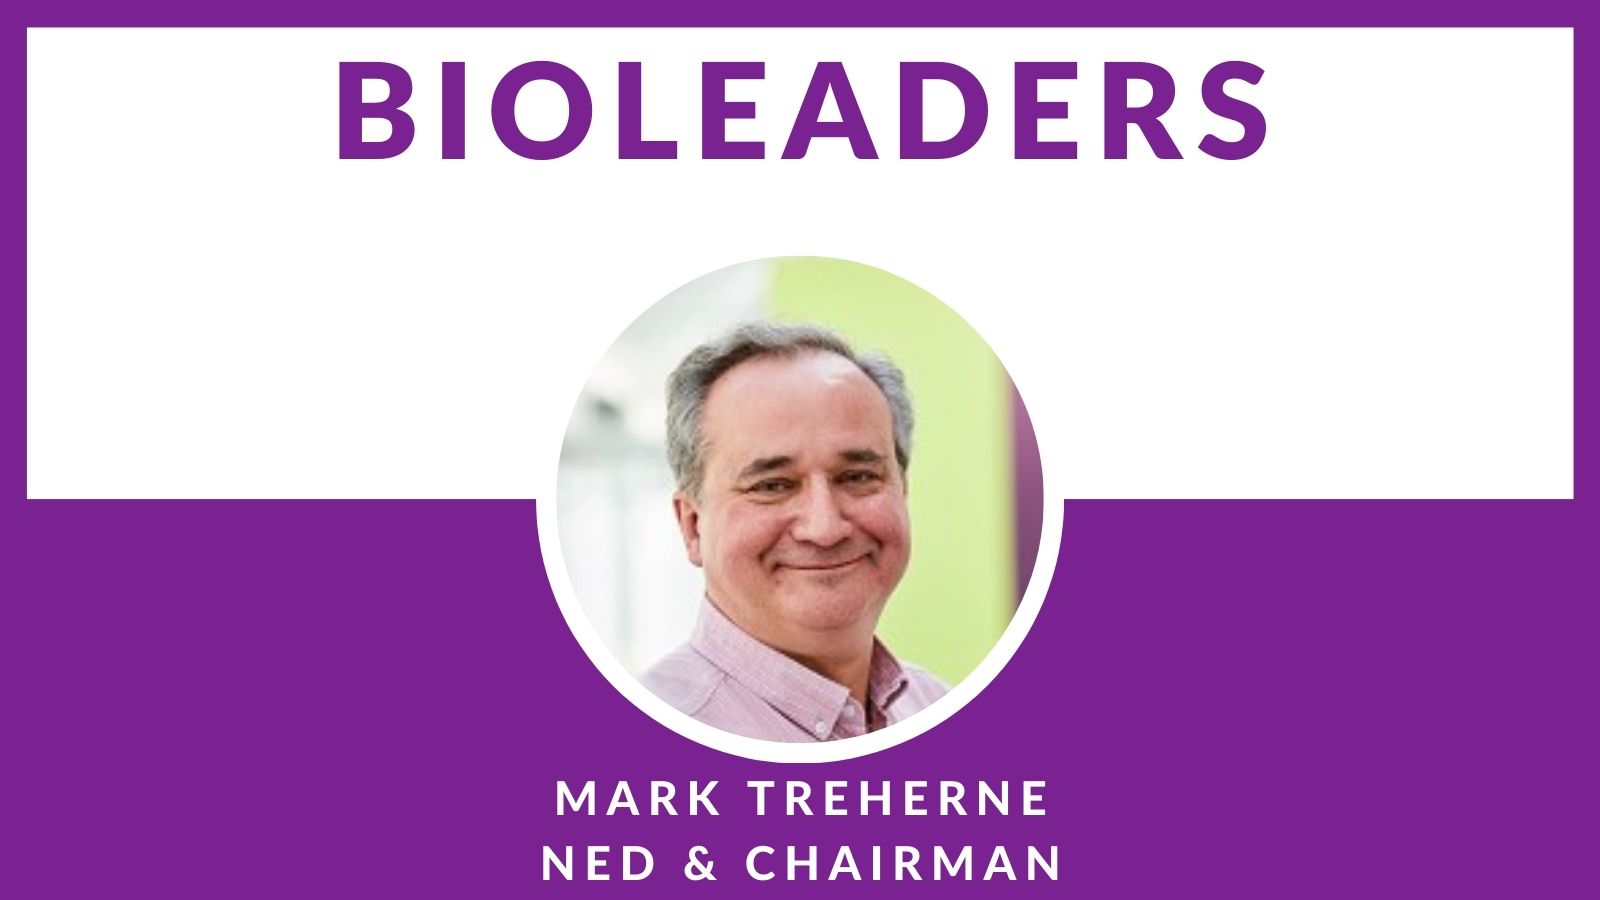 BioLeader Interviewee Mark Treherne